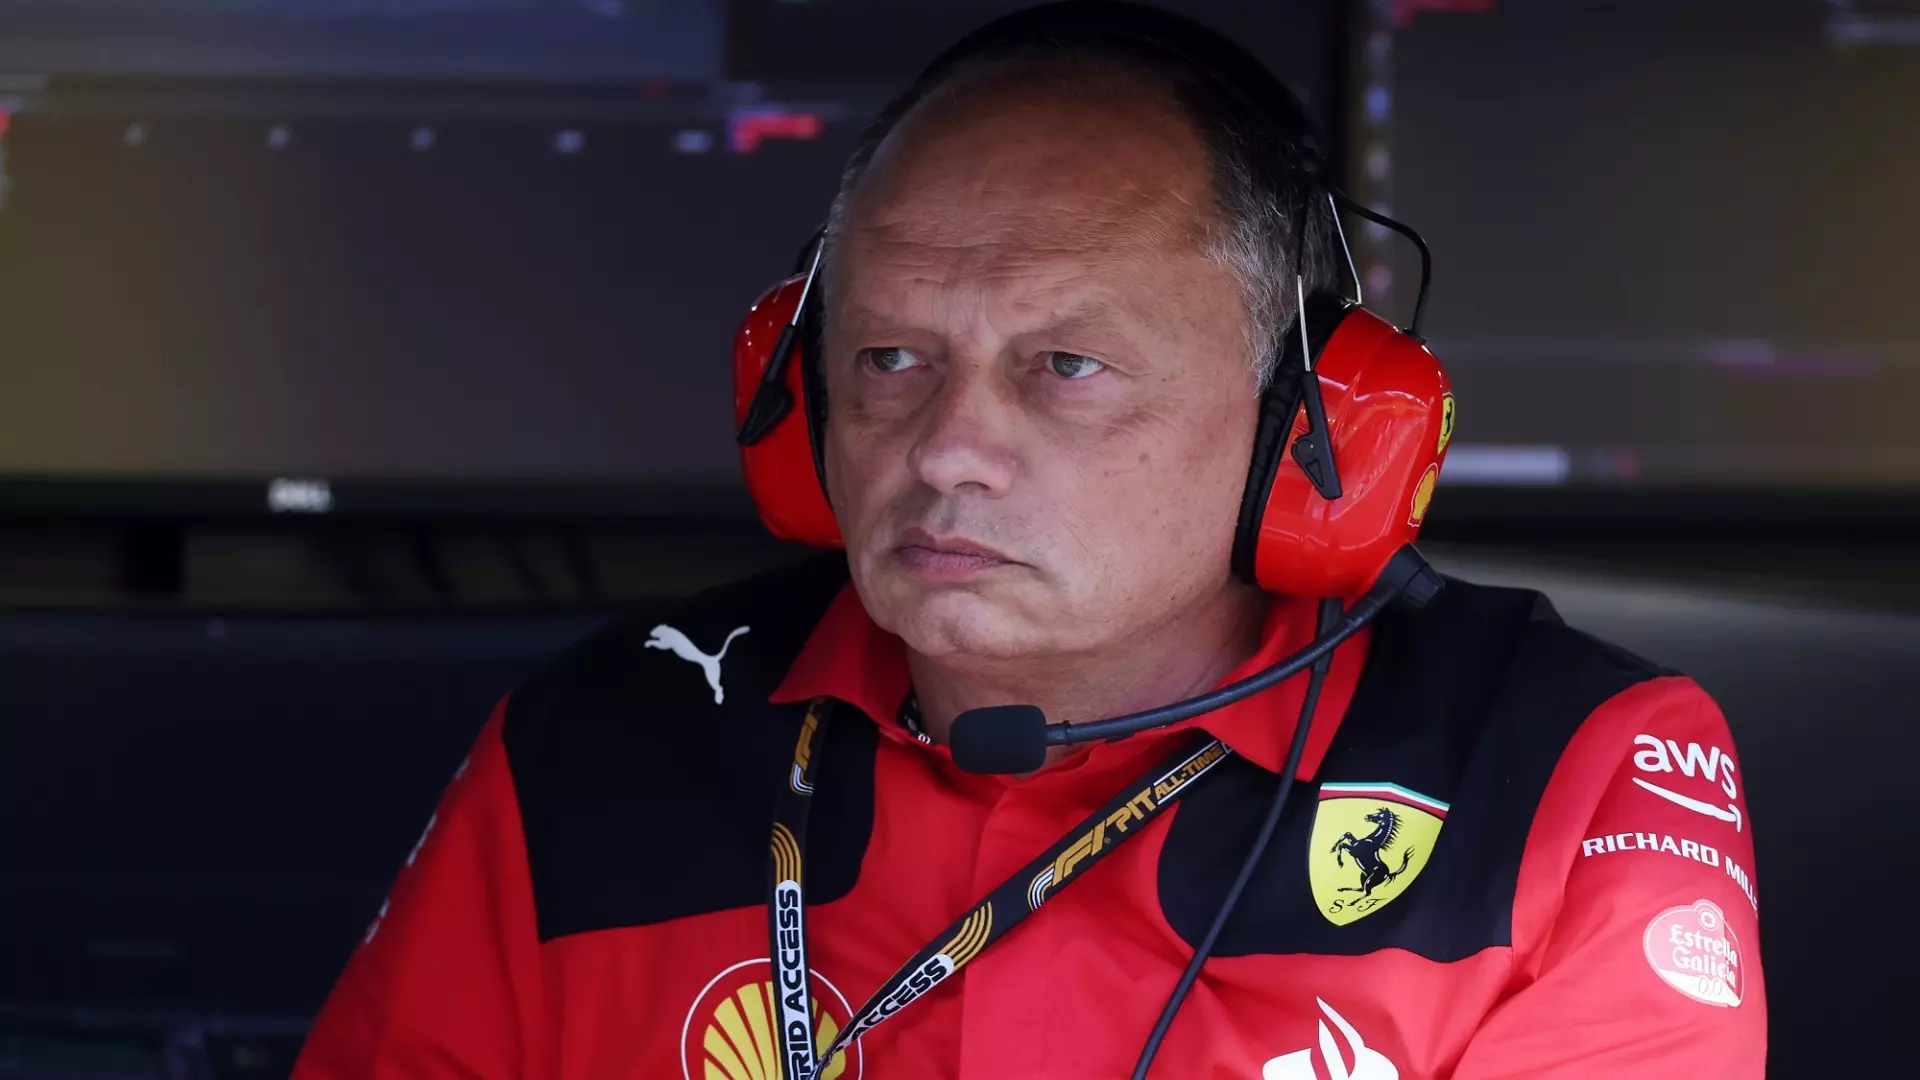 F1, Frederic Vasseur pronto a fare acquisti per la Ferrari